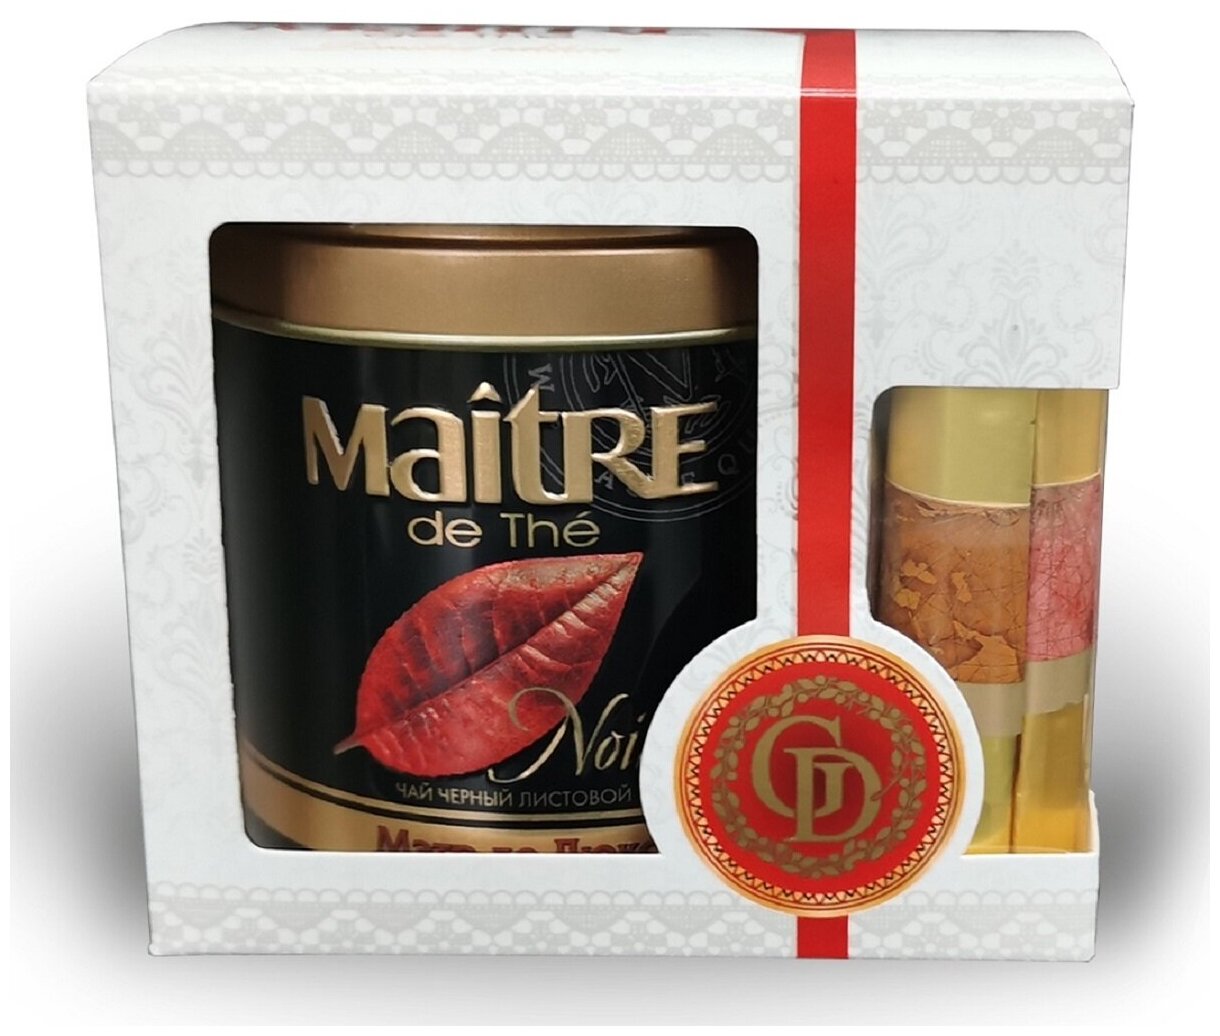 Набор подарочный: чай черный листовой Maitre de The мэтр ДЕ люкс 100г жестяная банка и шоколадные конфеты GOLDEN DESSERT 2 шт х 22 г, 144г мэтр